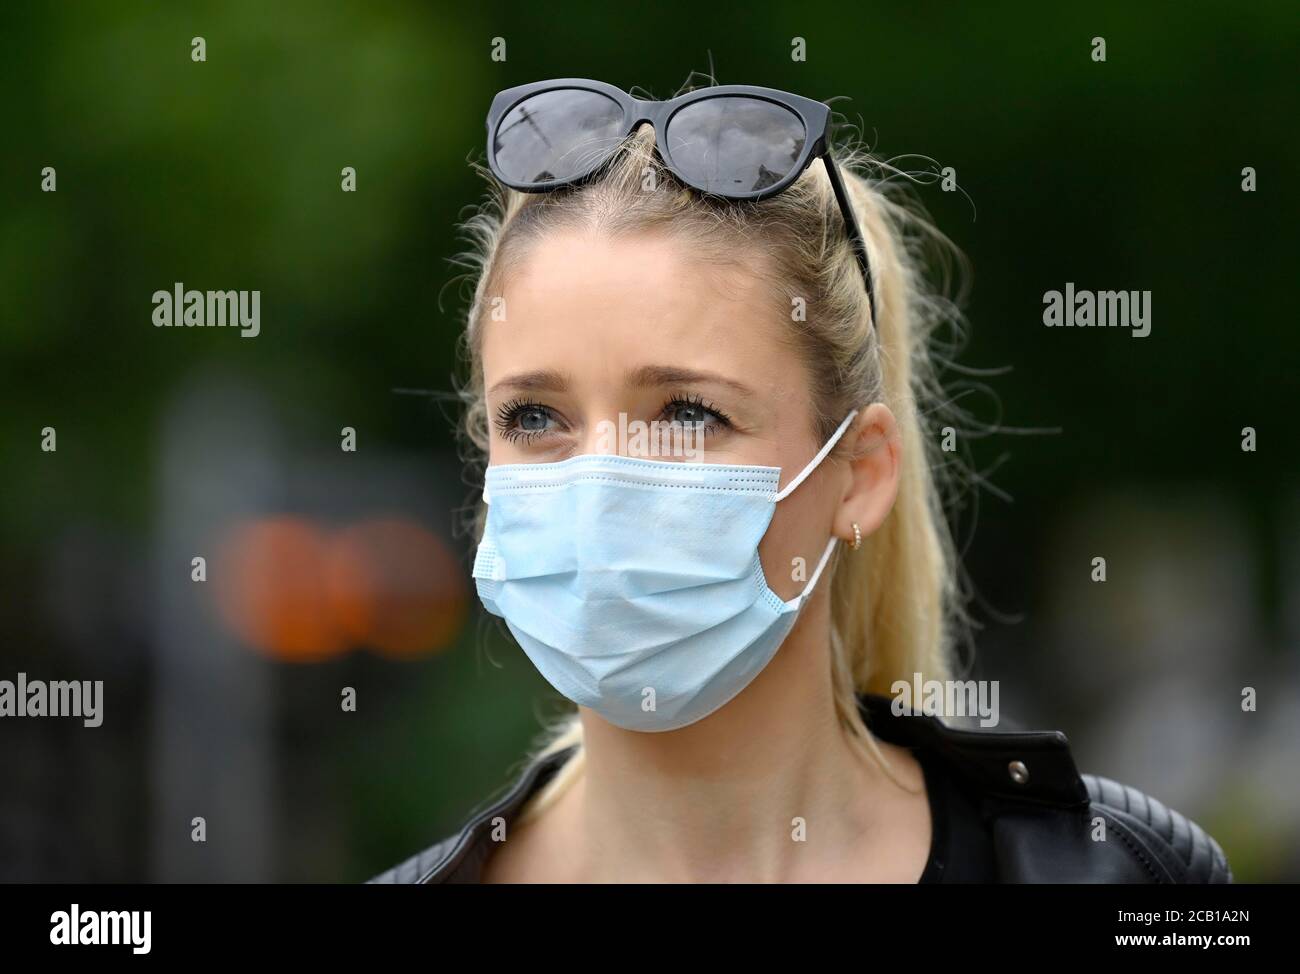 La mujer usa la máscara de la boca correctamente sobre la nariz y la boca, retrato, crisis de corona, Alemania Foto de stock